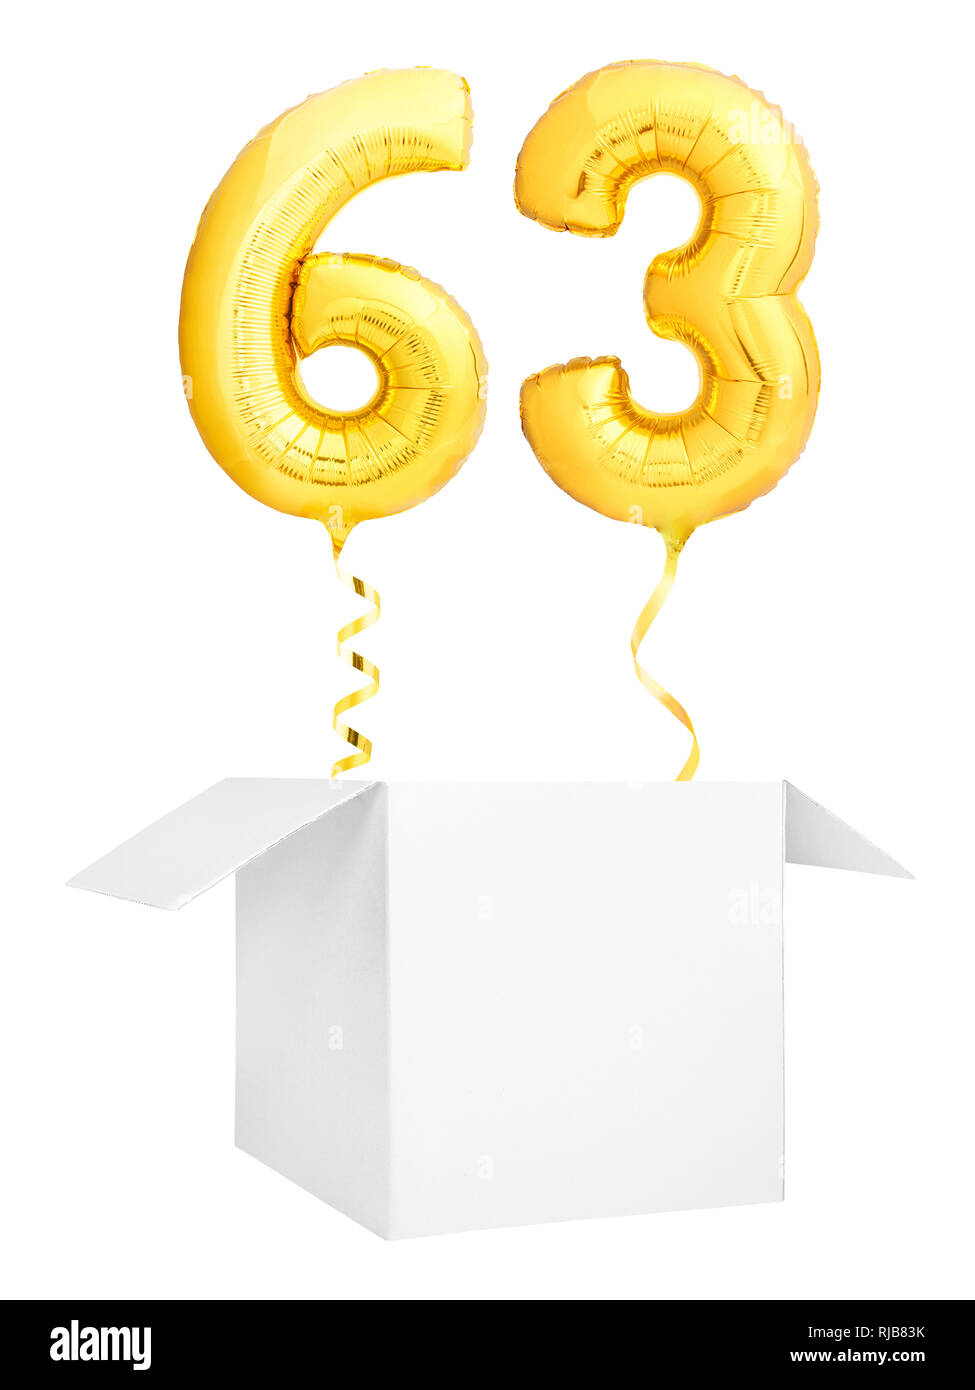 Golden número sesenta y tres globos inflables con cinta dorada que volaba fuera de cuadro en blanco aislado sobre fondo blanco. Foto de stock